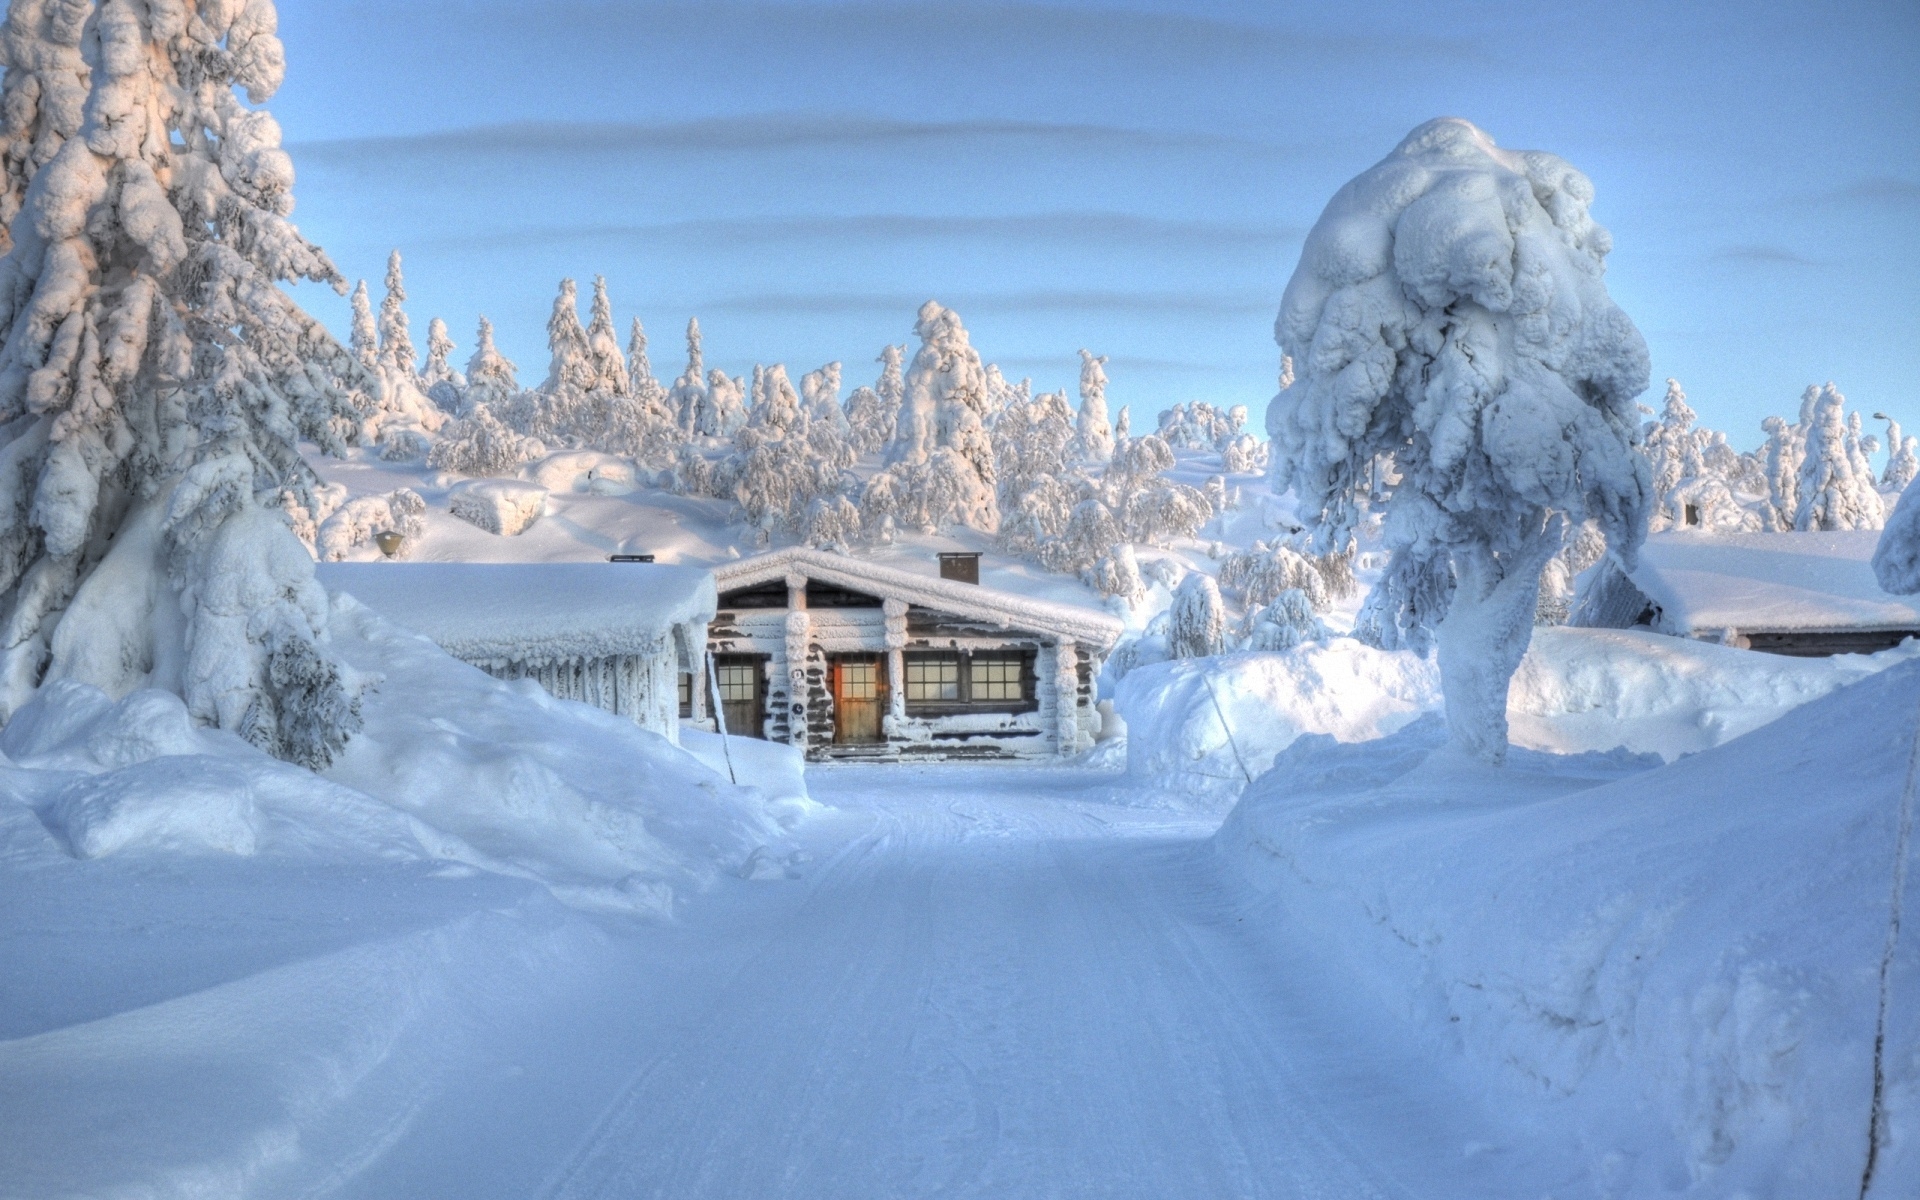 电脑主题图片大全 冬季雪景唯美自然风光图片(9)